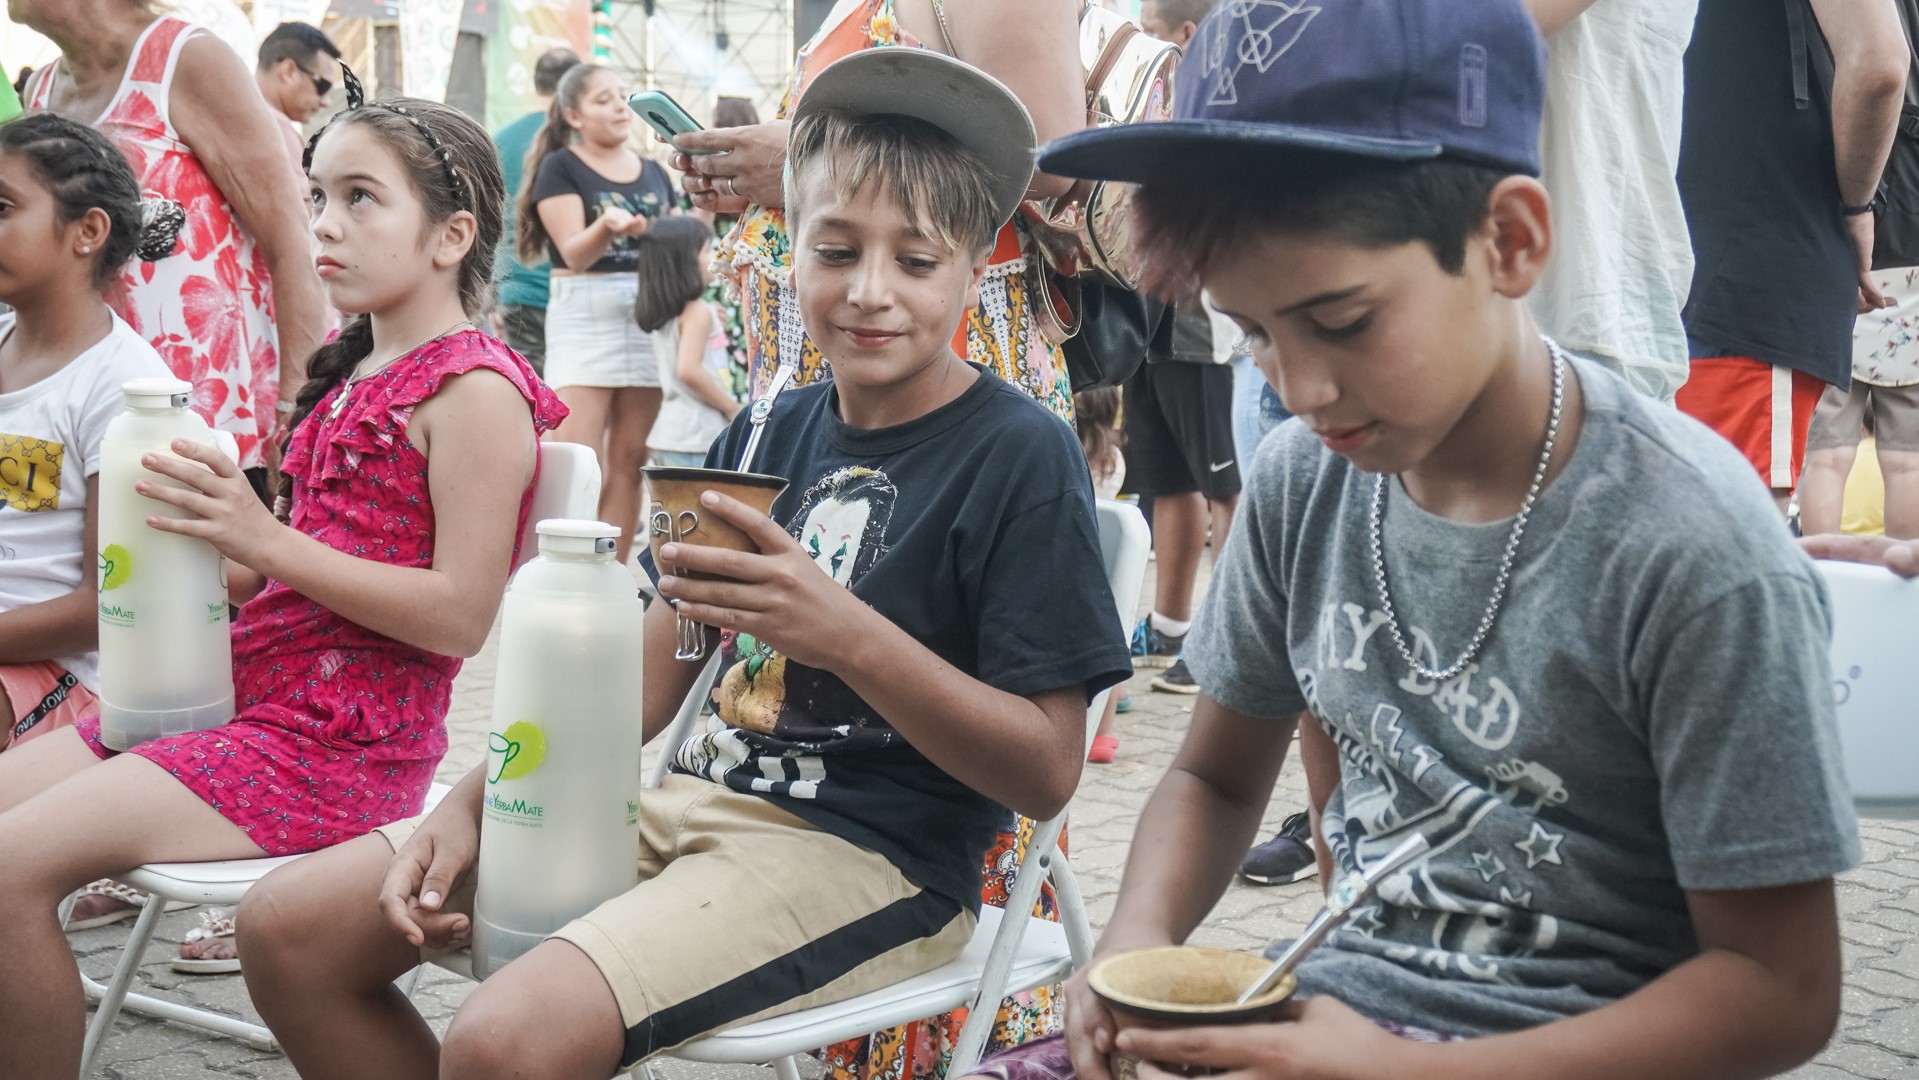 niños aprendiendo a preparar mates en concurso de cebadores mate 2020 parana entre rios